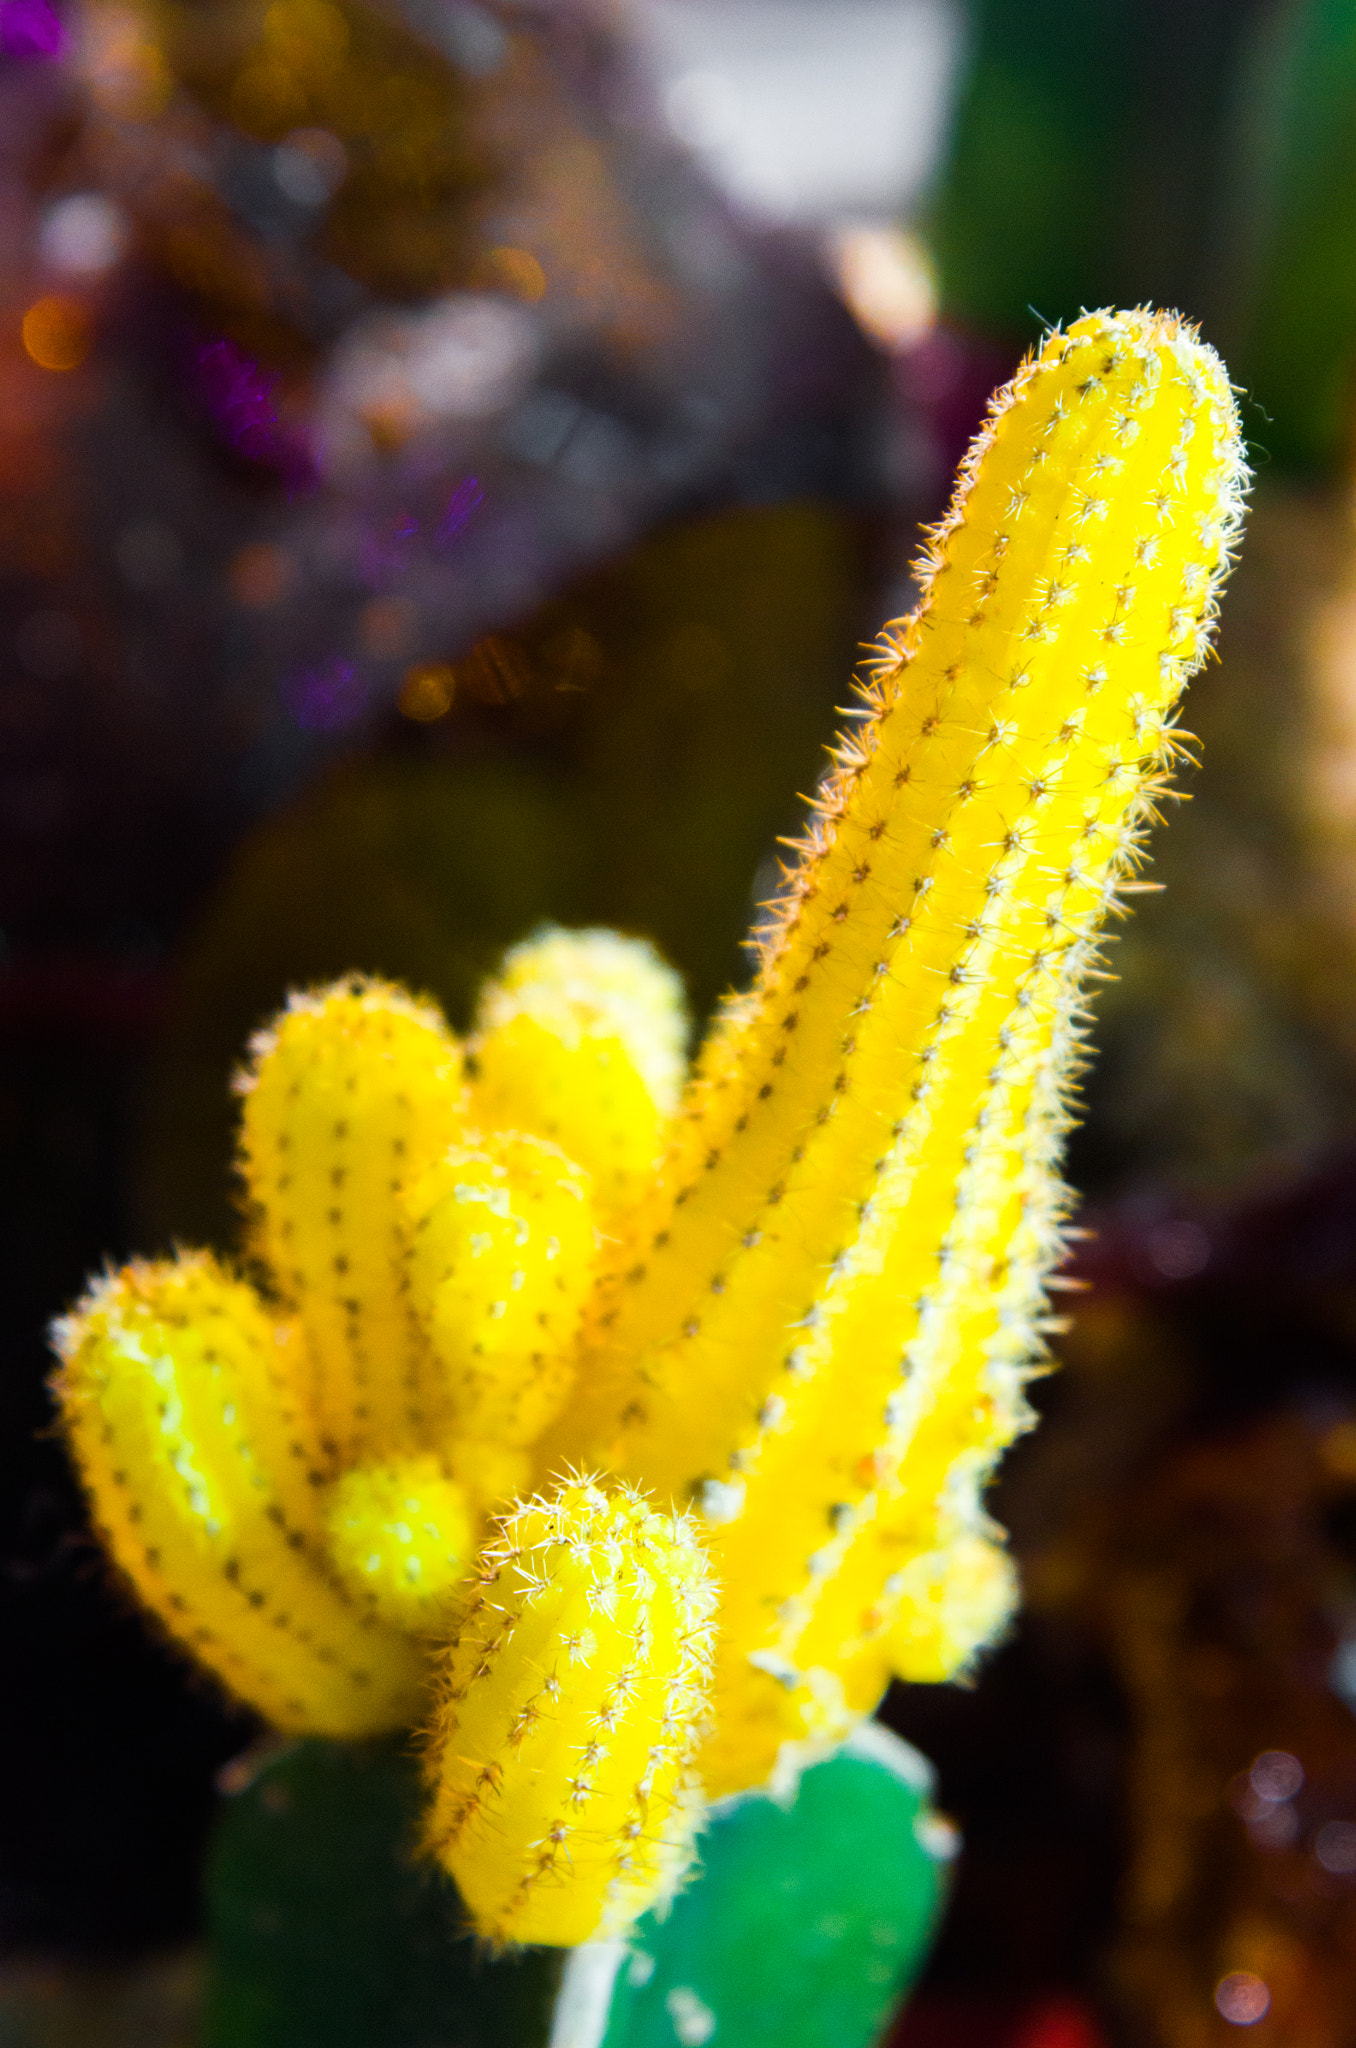 Nikon D7000 sample photo. Yellow cactus photography